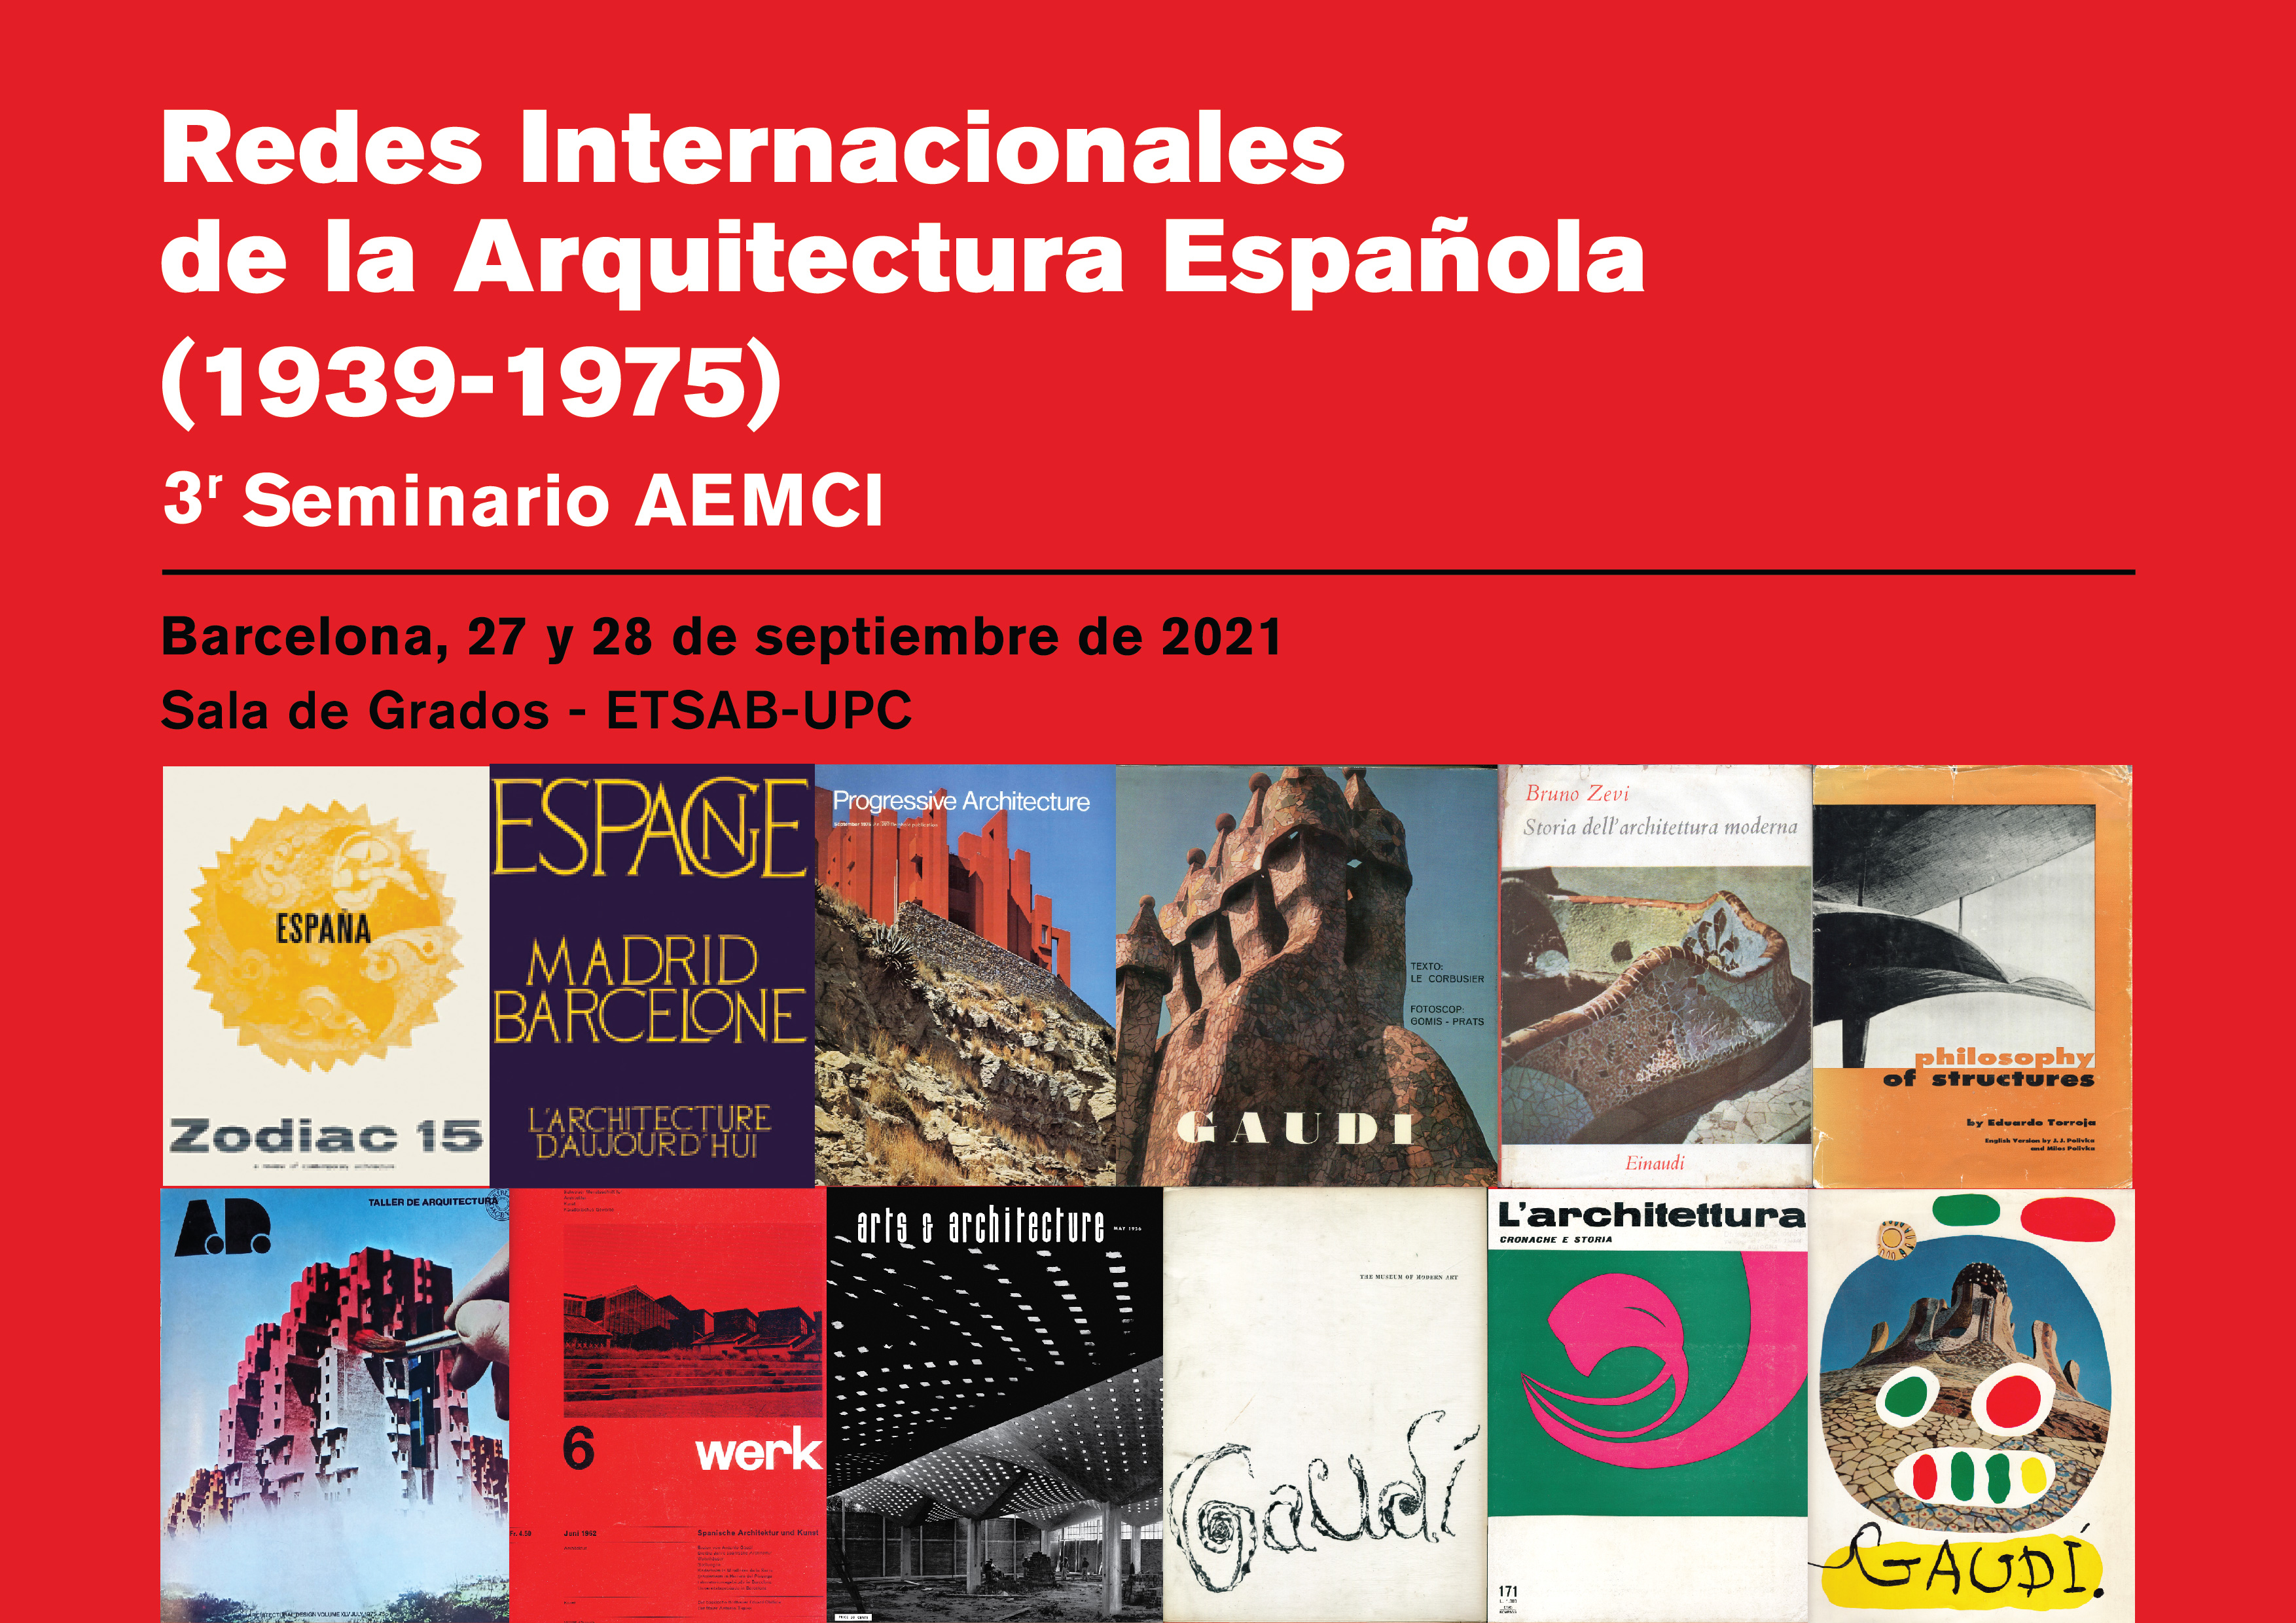 Redes Internacionales de la Arquitectura Española (1939-1975). 3r Seminario AEMCI 